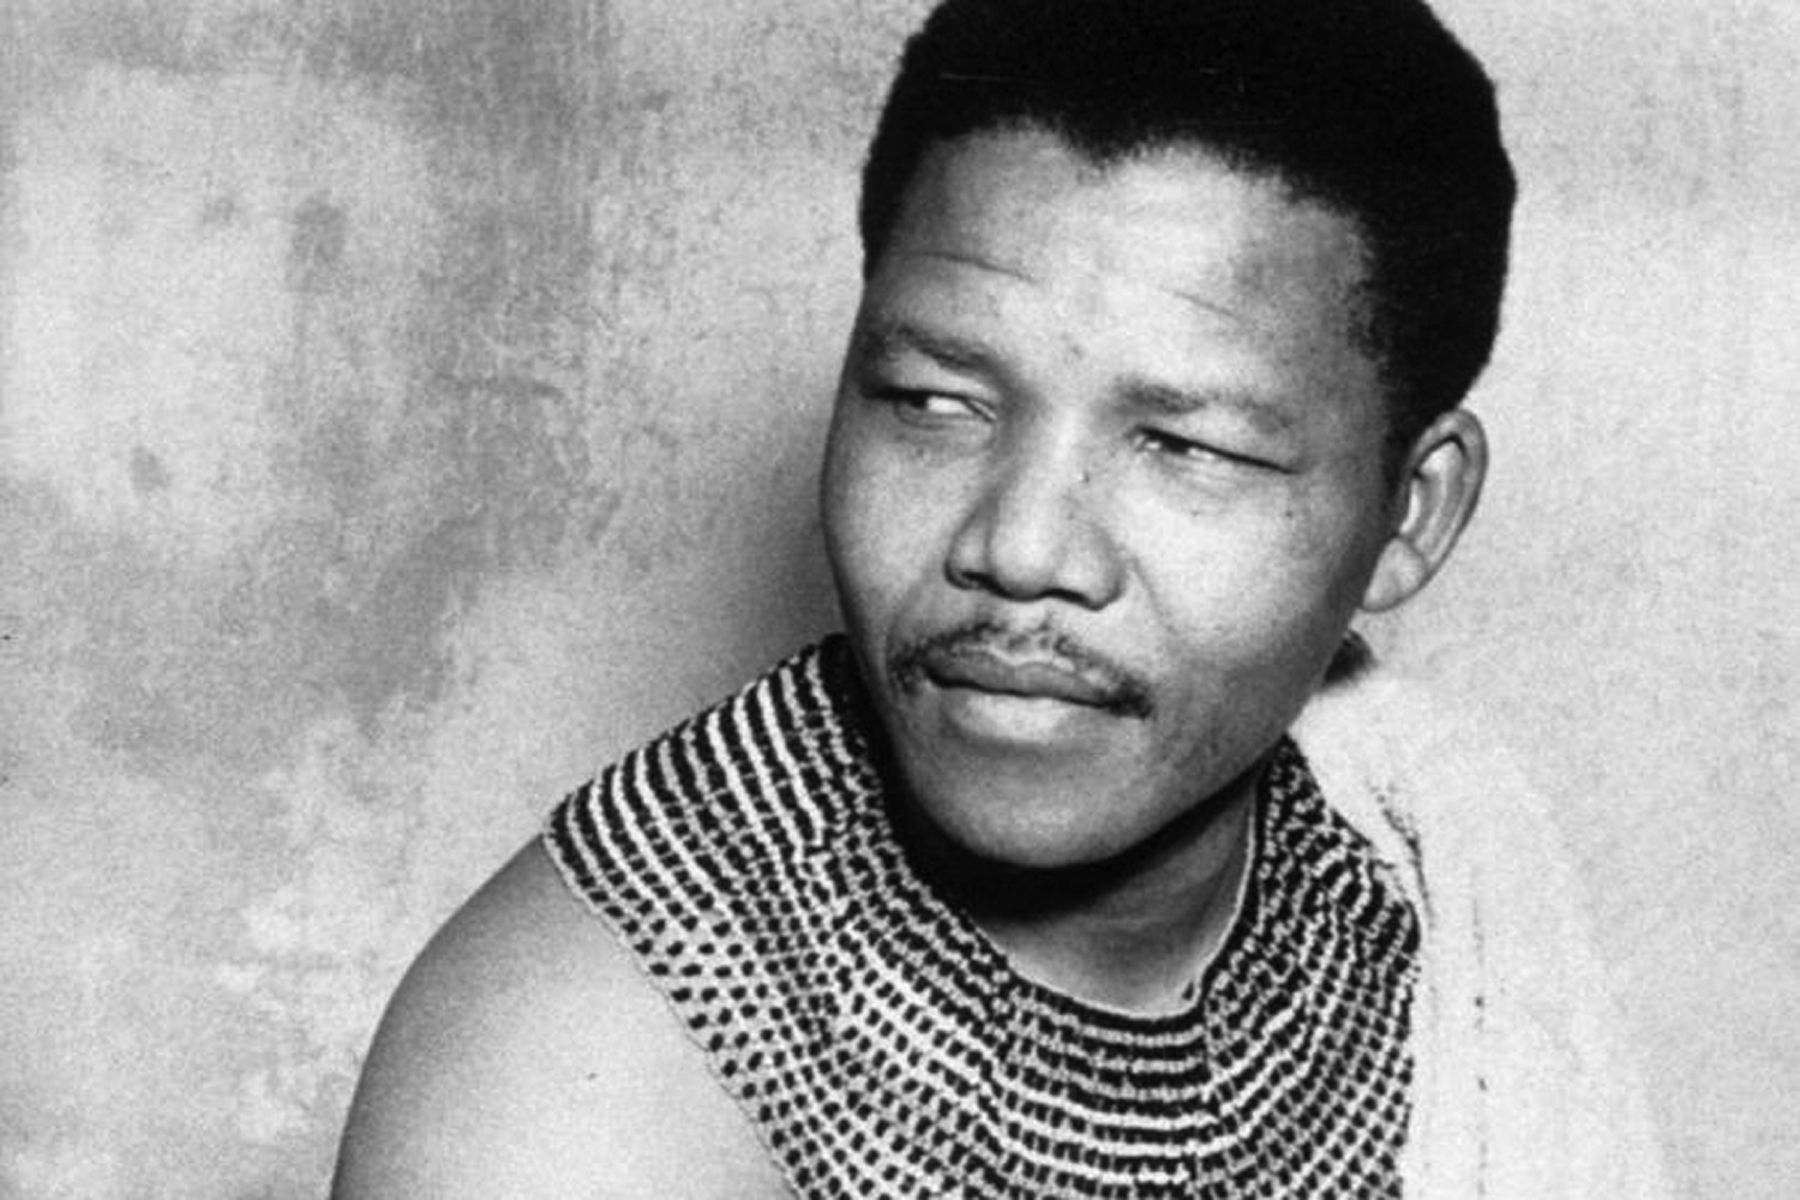 La il·legalització del CNA no va aturar Mandela que va seguir amb les seves activitats. Sovint es disfressava, com en aquesta foto del 1961 vestit de cap tribal